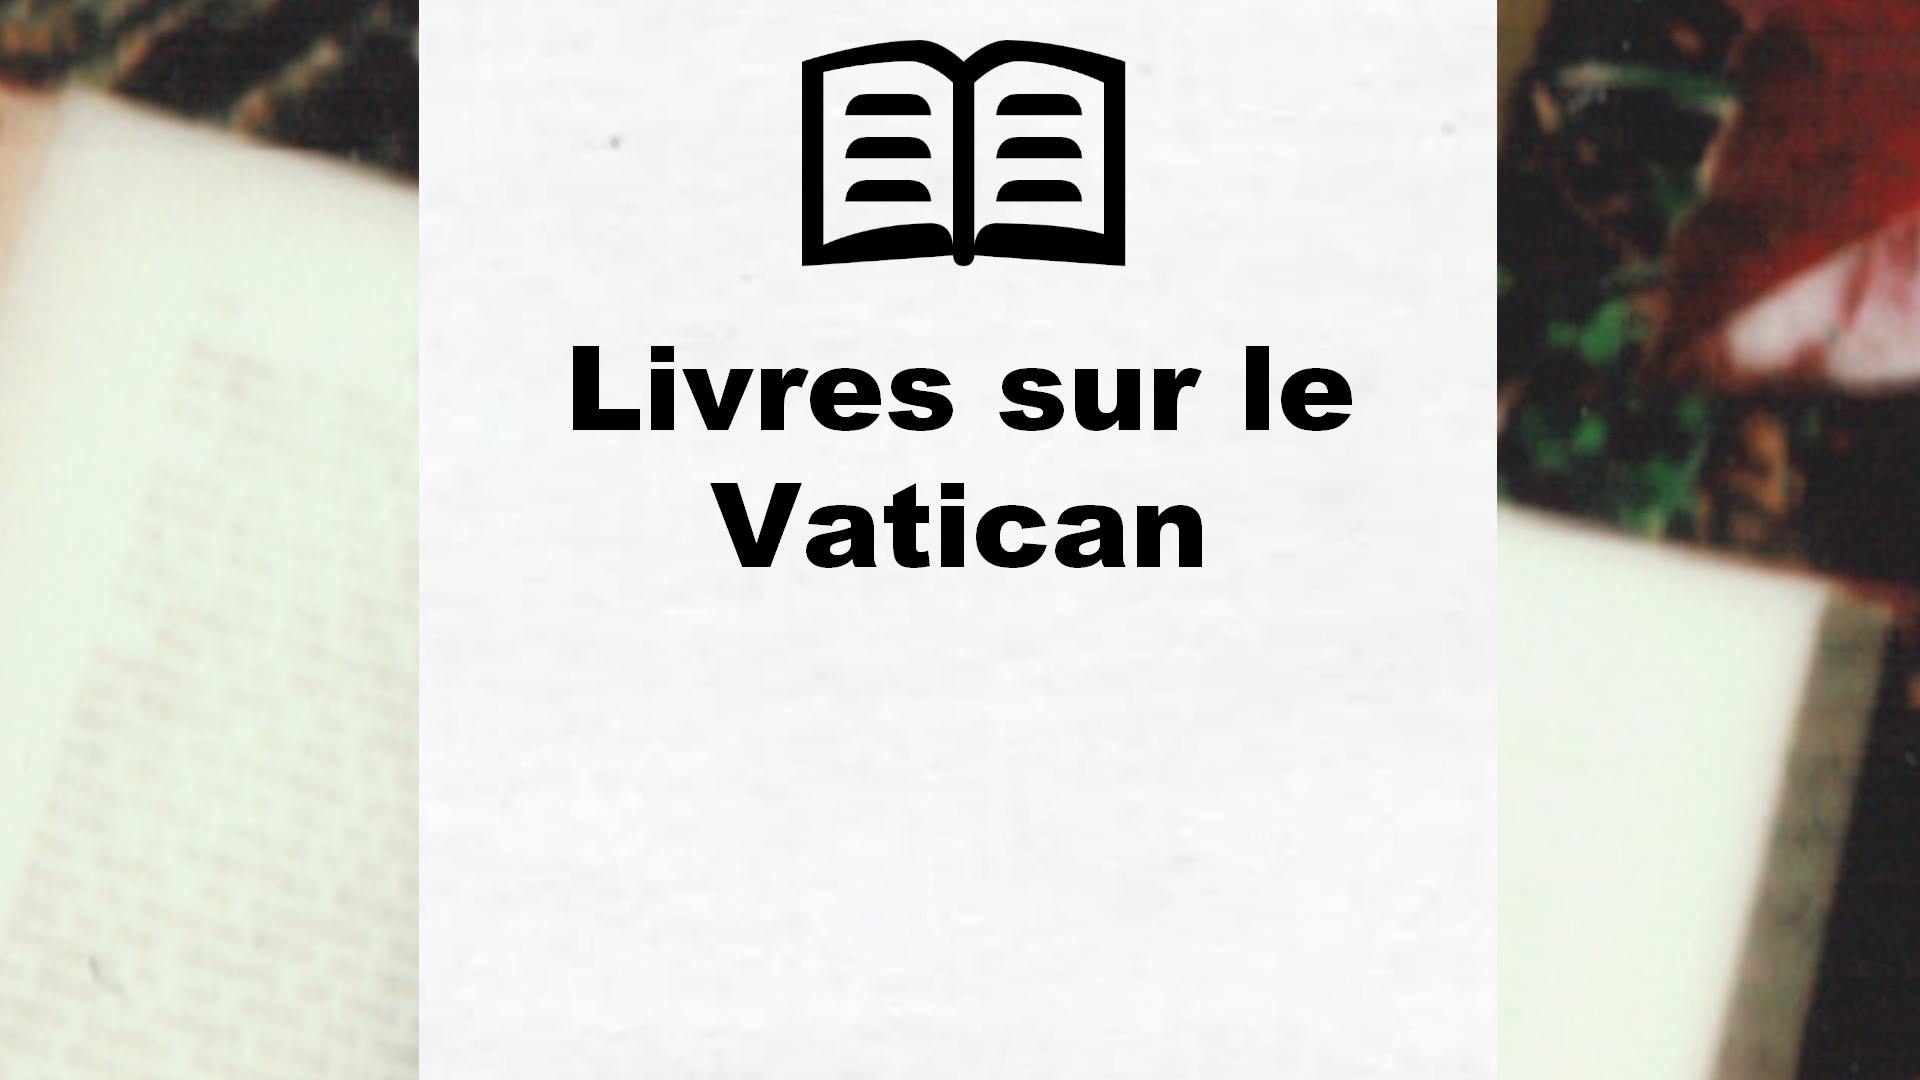 Livres sur le Vatican